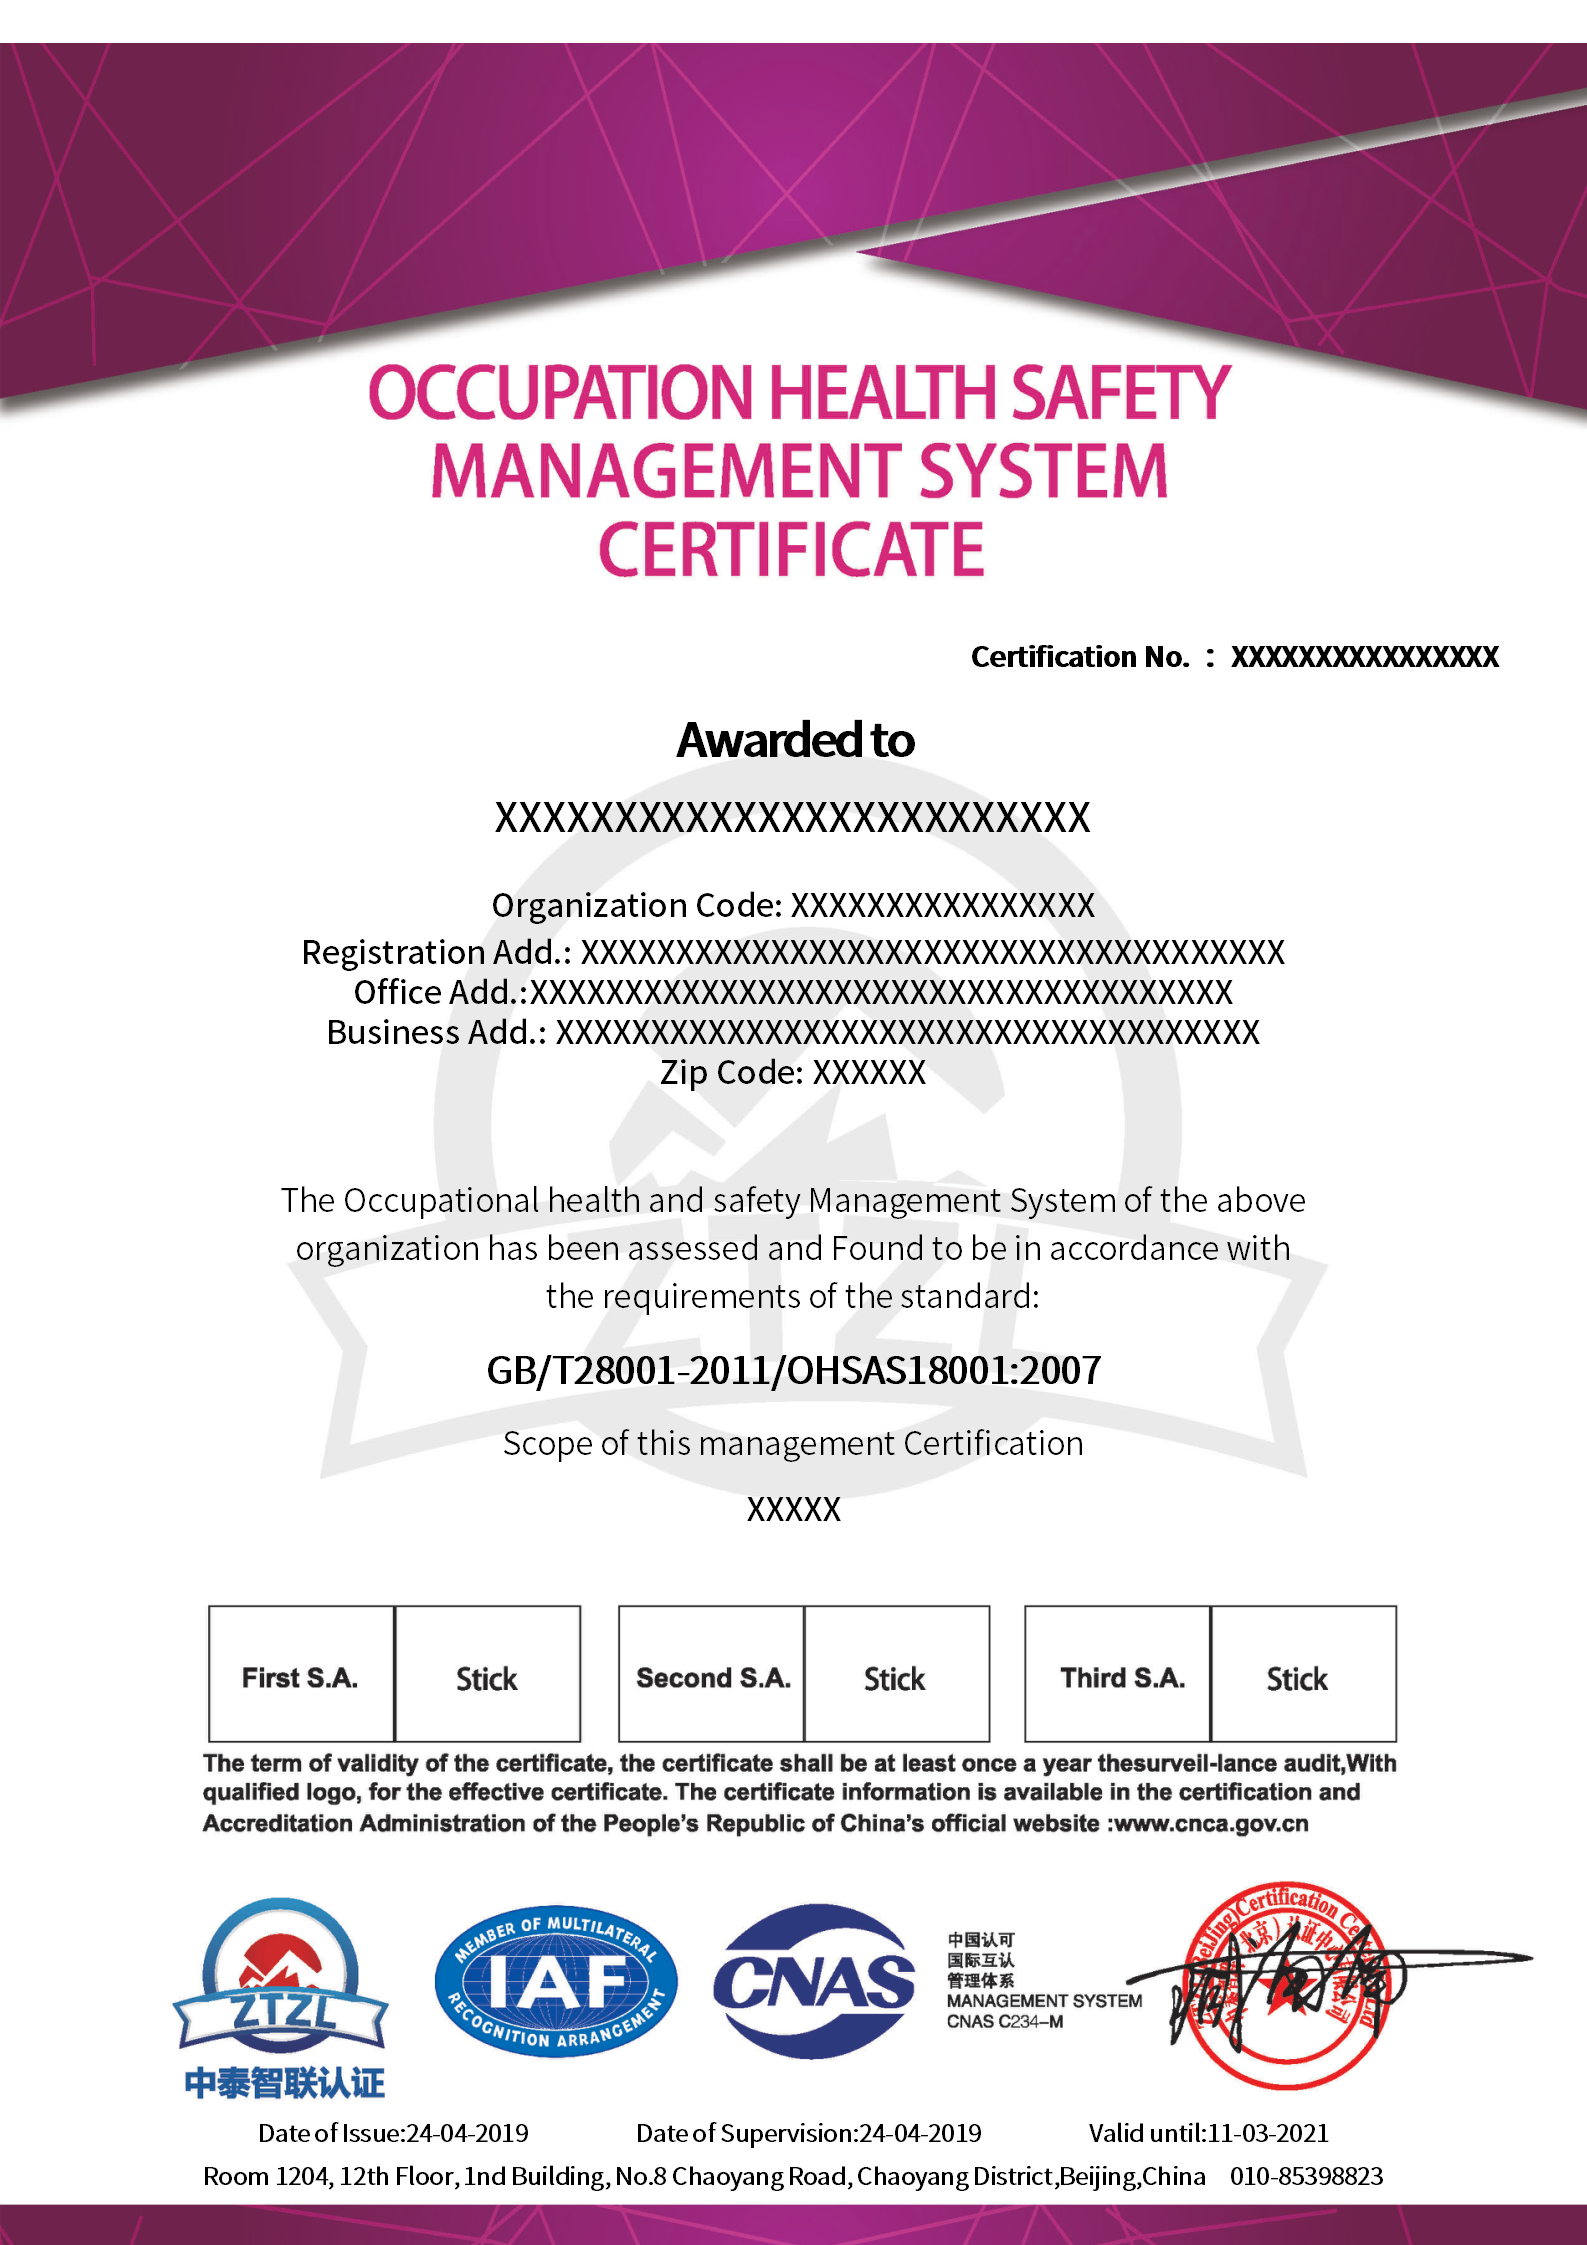 证书样本－职业健康安全管理体系认证证书-带CNAS标_02.png